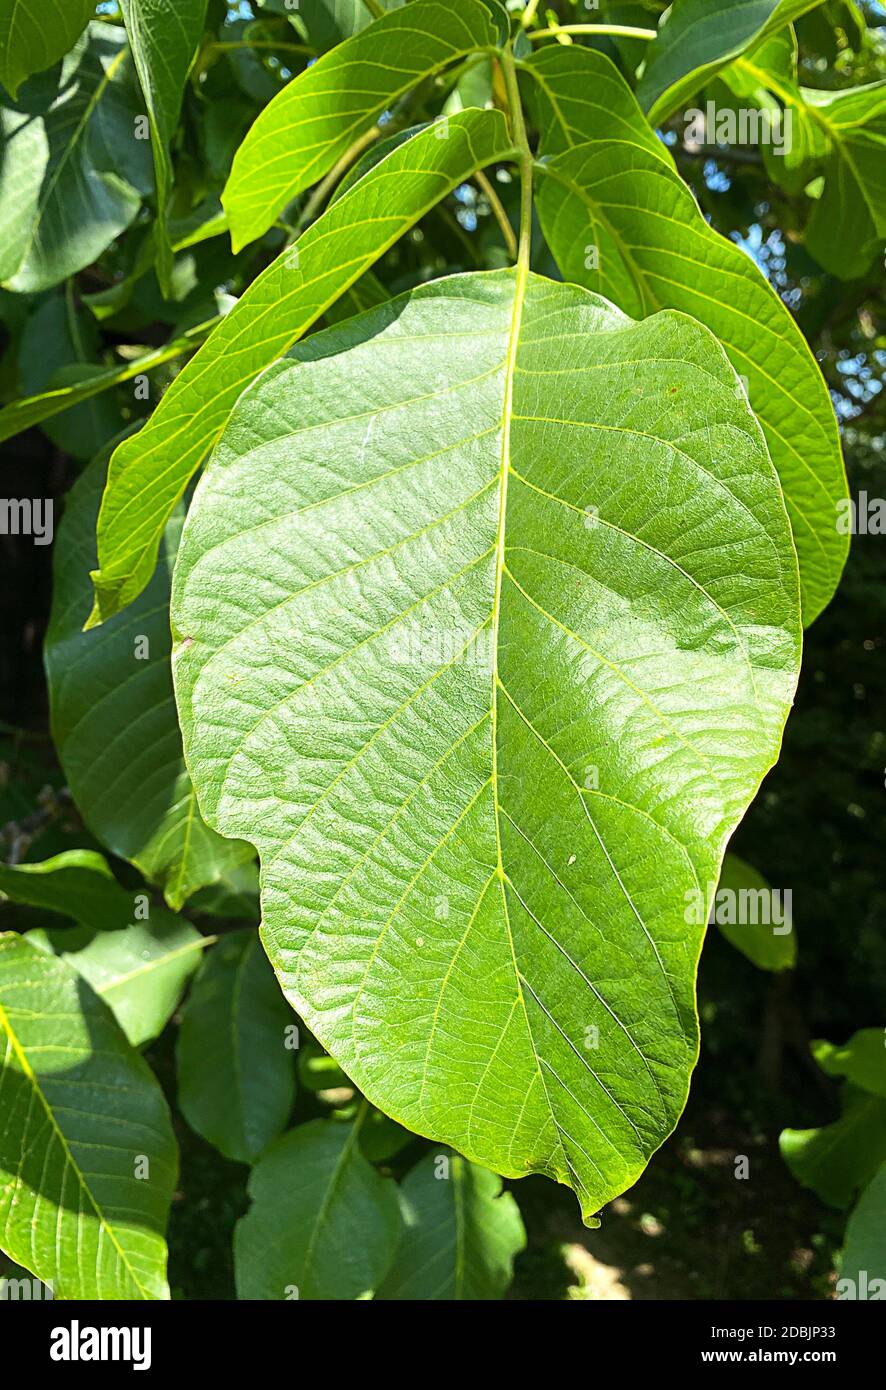 Walnut tree leaf on the tree Stock Photo